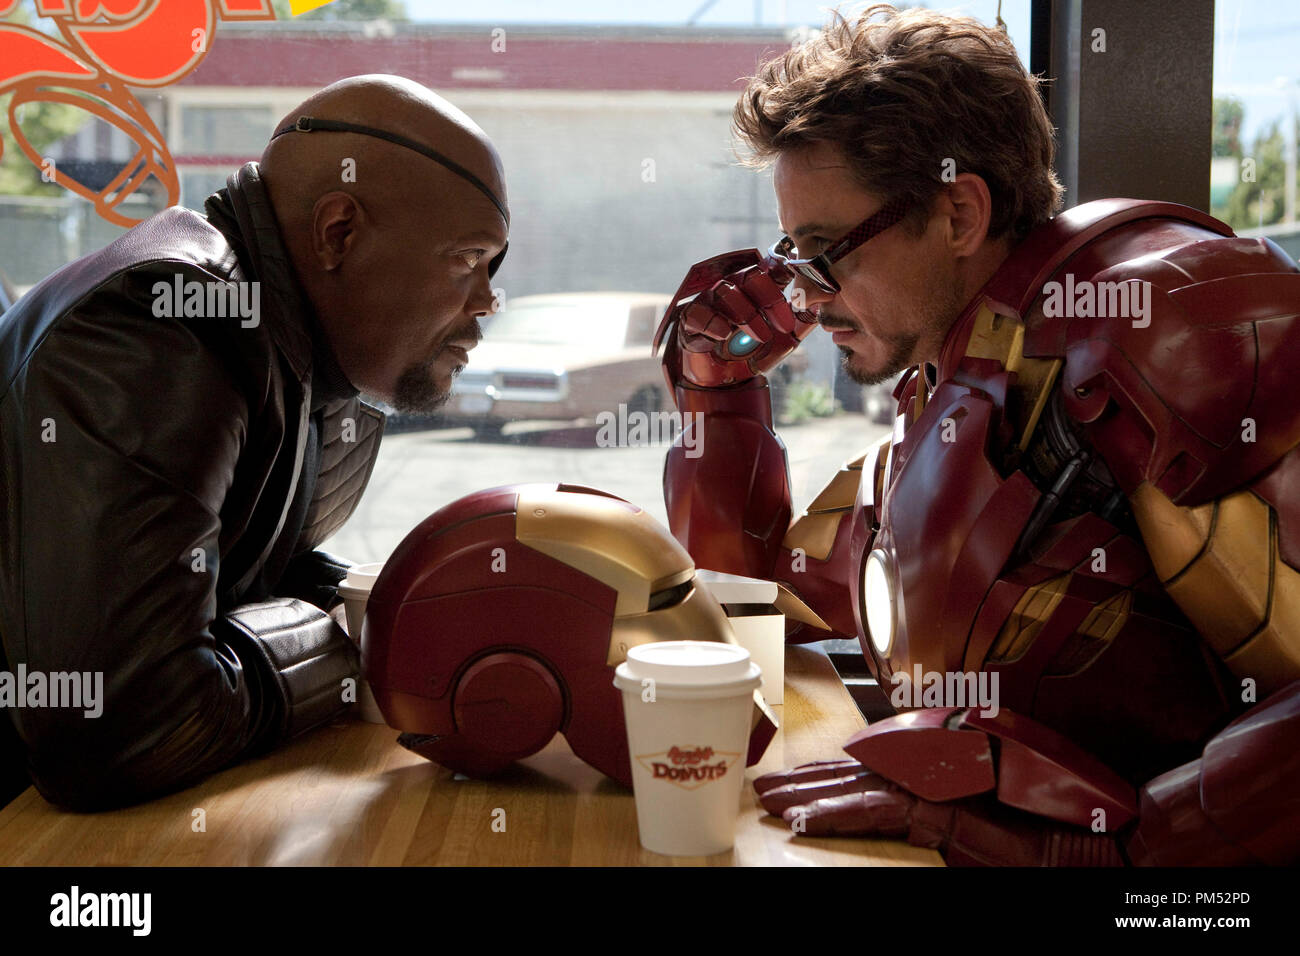 De izquierda a derecha: Samuel L. Jackson interpreta a Nick Furia, director  de S.H.E.I.L.D., y Robert Downey Jr. interpreta a Tony Stark, alias Iron Man,  en "Iron Man 2 Fotografía de stock -